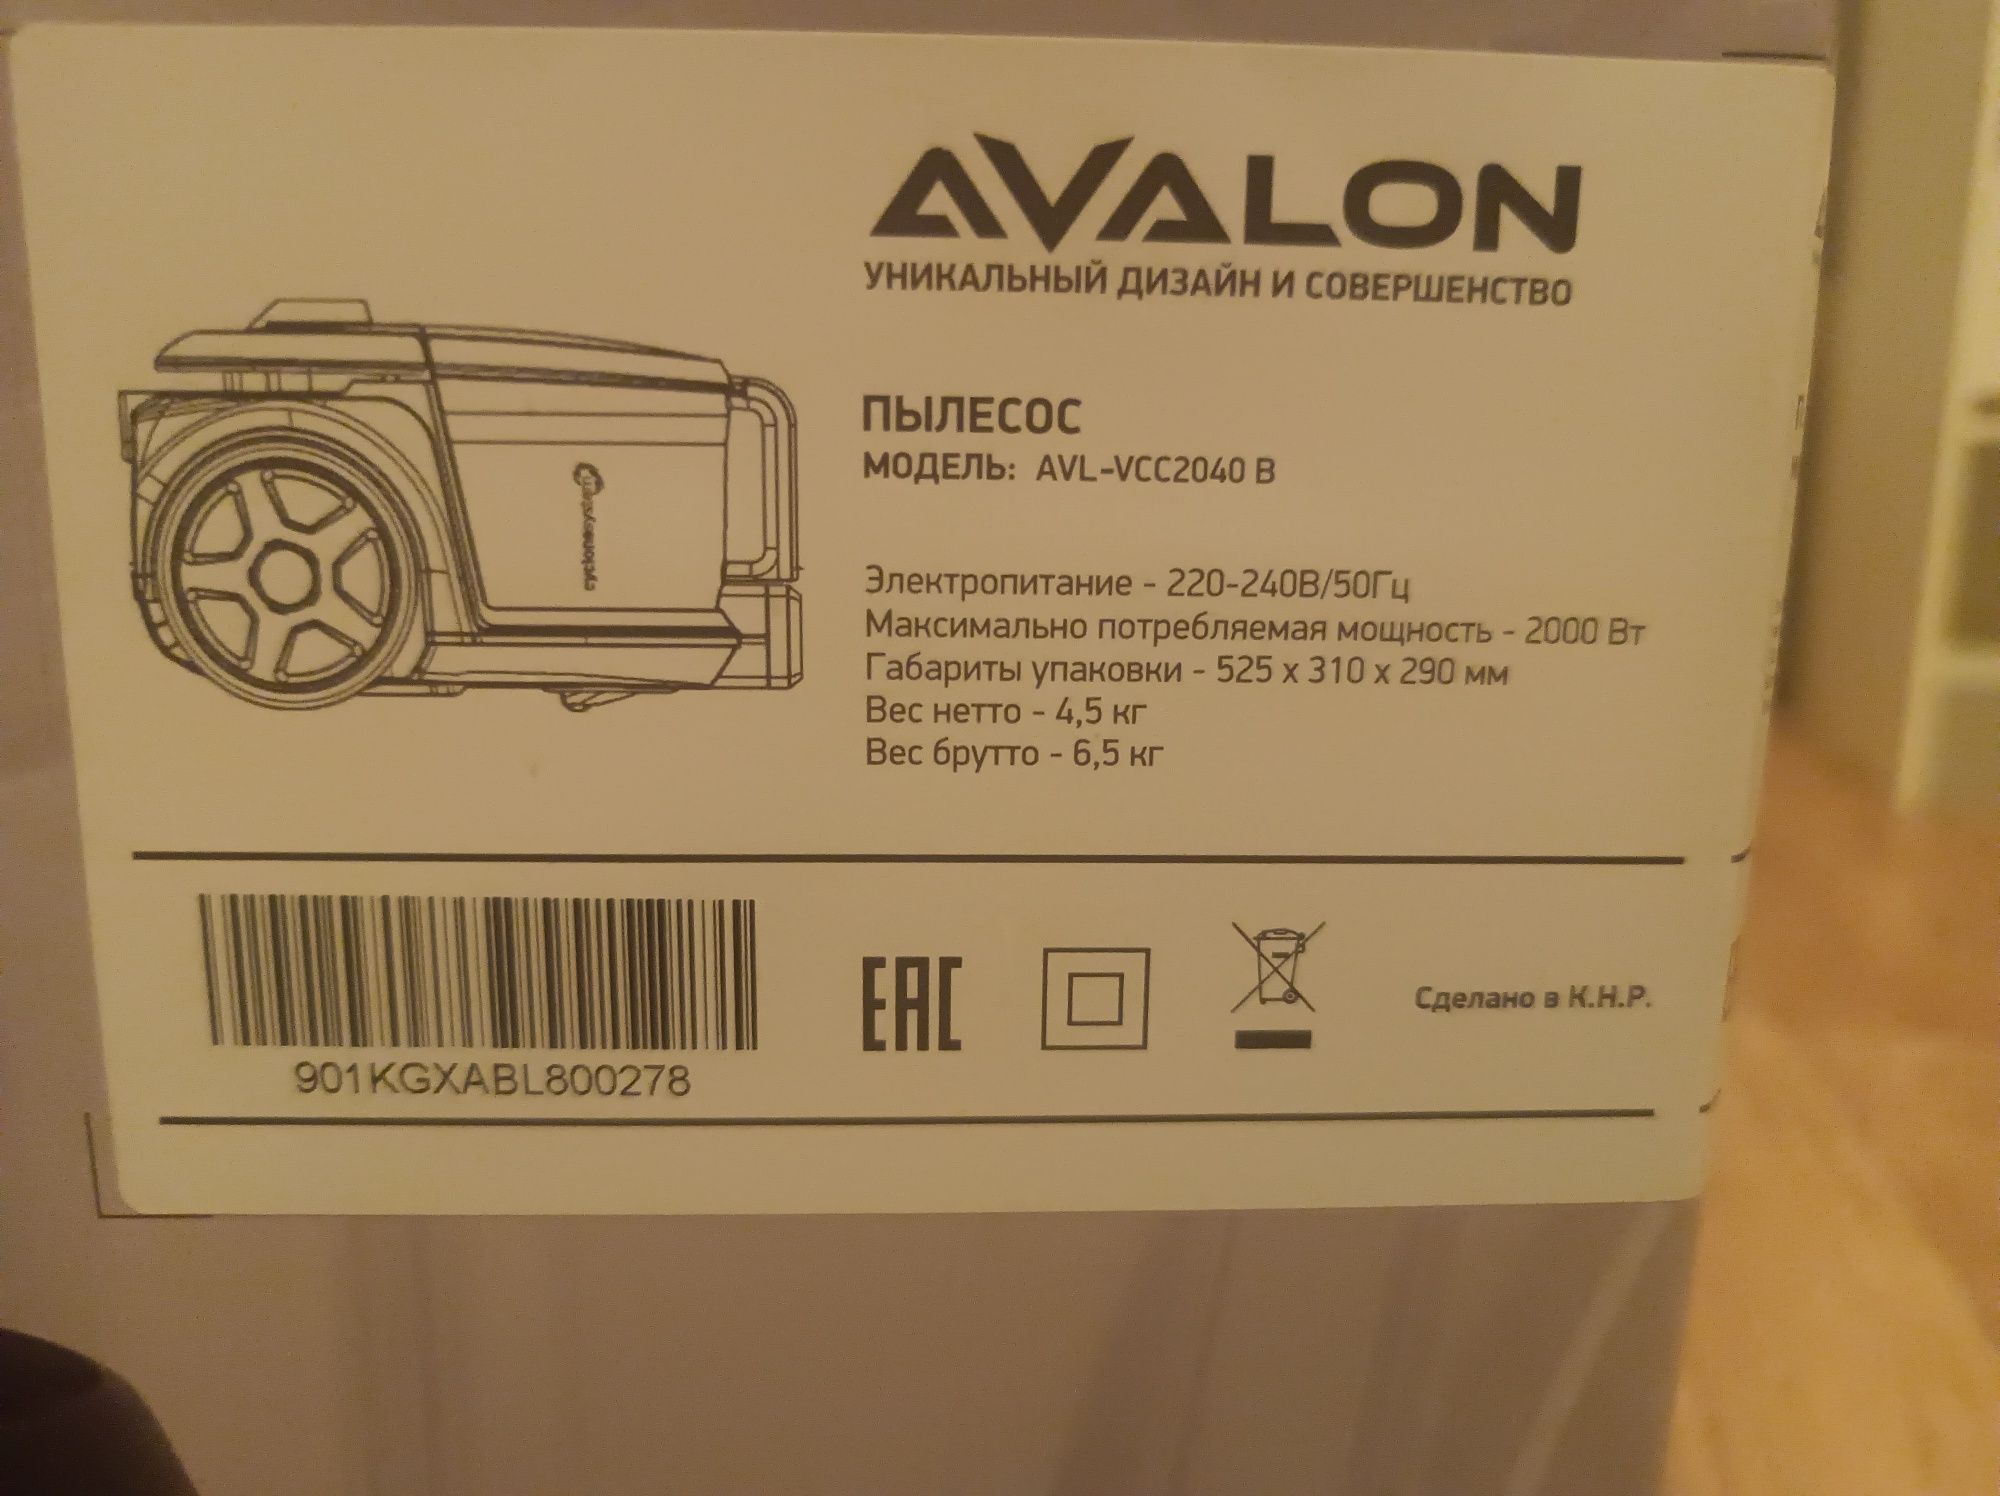 Продается пылесос AVALON новый в упаковке.